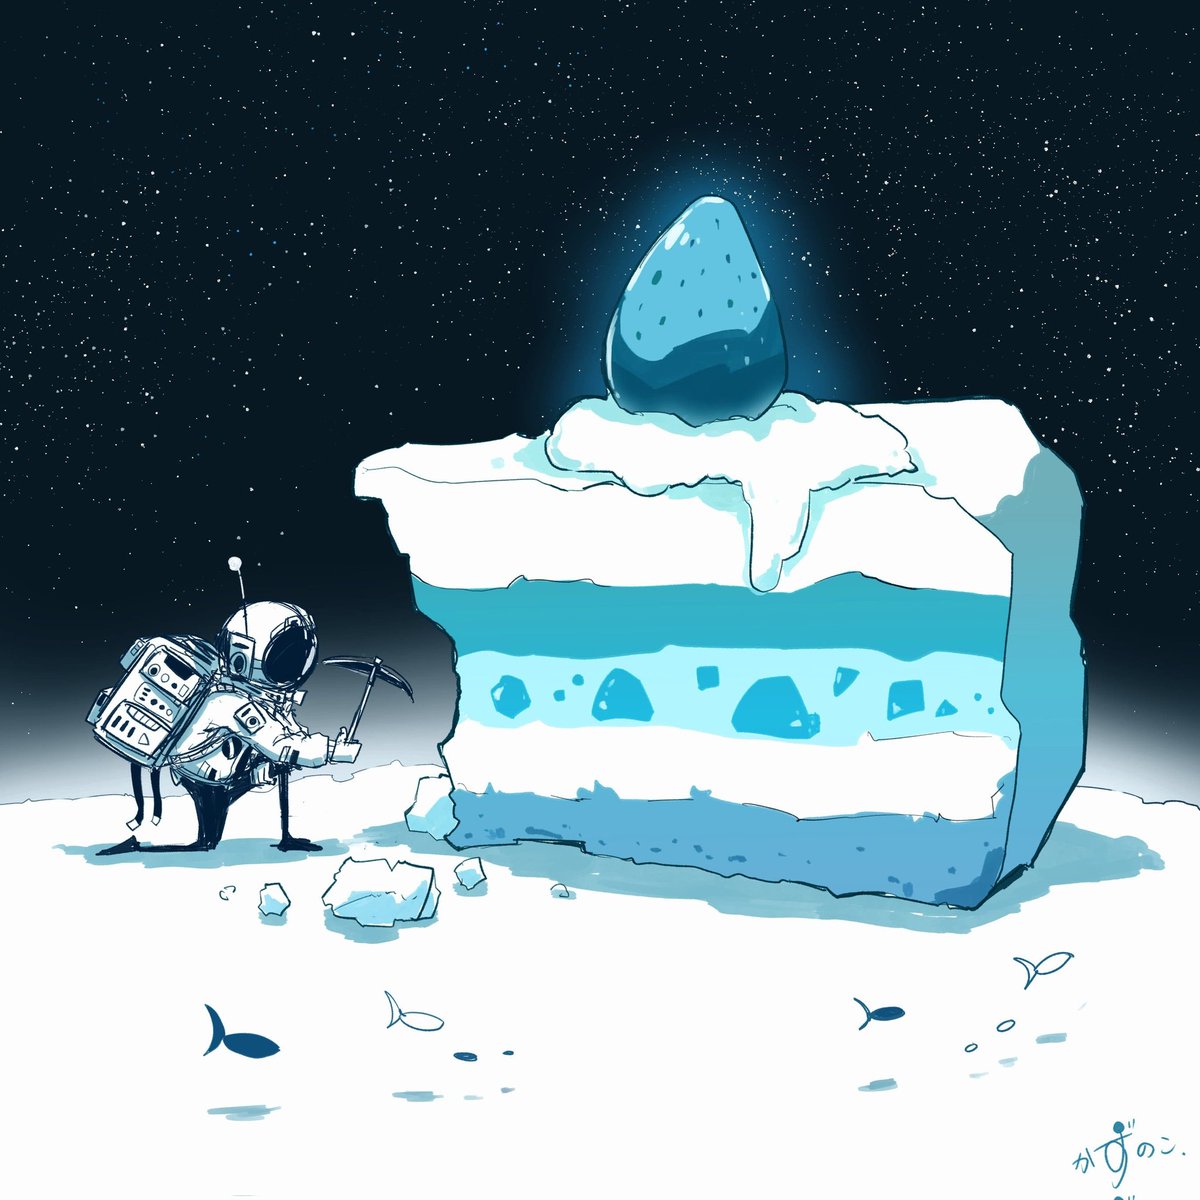 「雪と宇宙の相性がいい!描いてて楽しい! 」|かずのこのイラスト